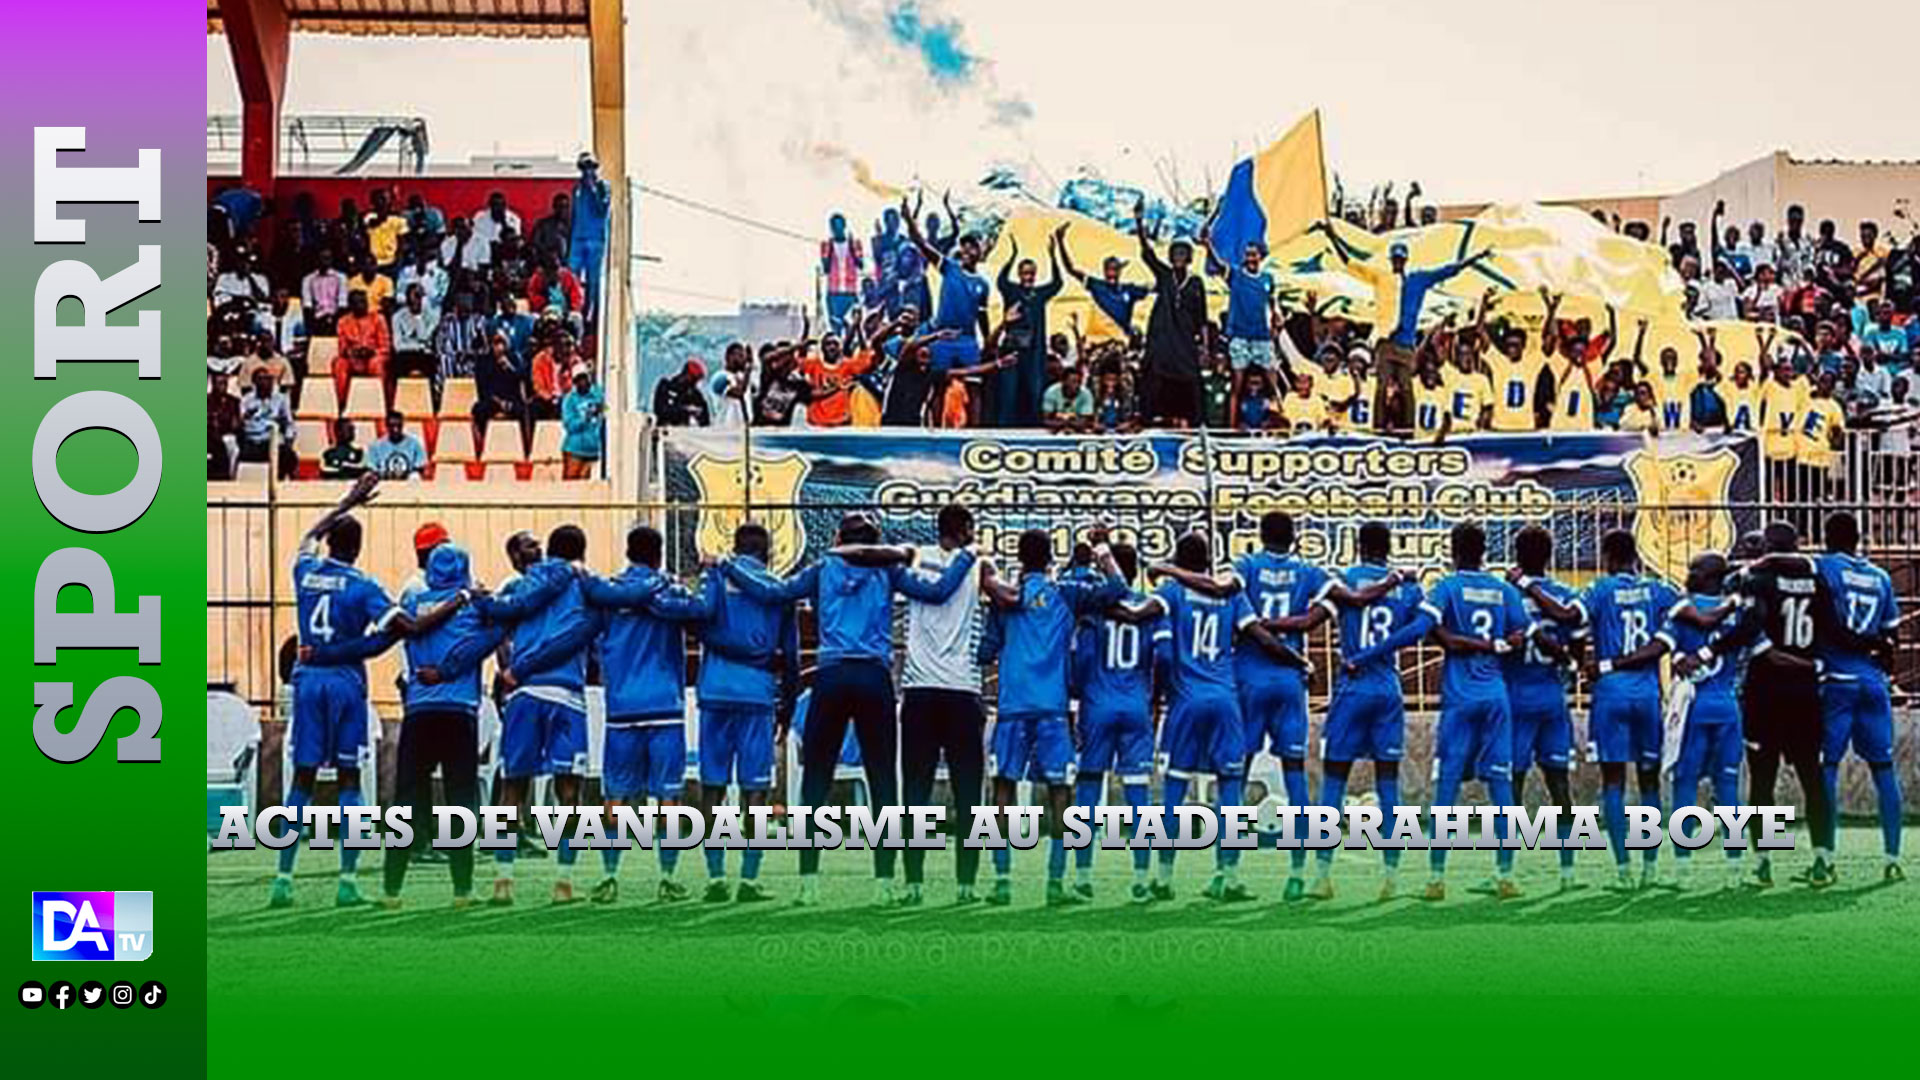 Actes de vandalisme au stade Ibrahima Boye : Guediawaye FC dégage toutes ses responsabilités et couve ses supporters